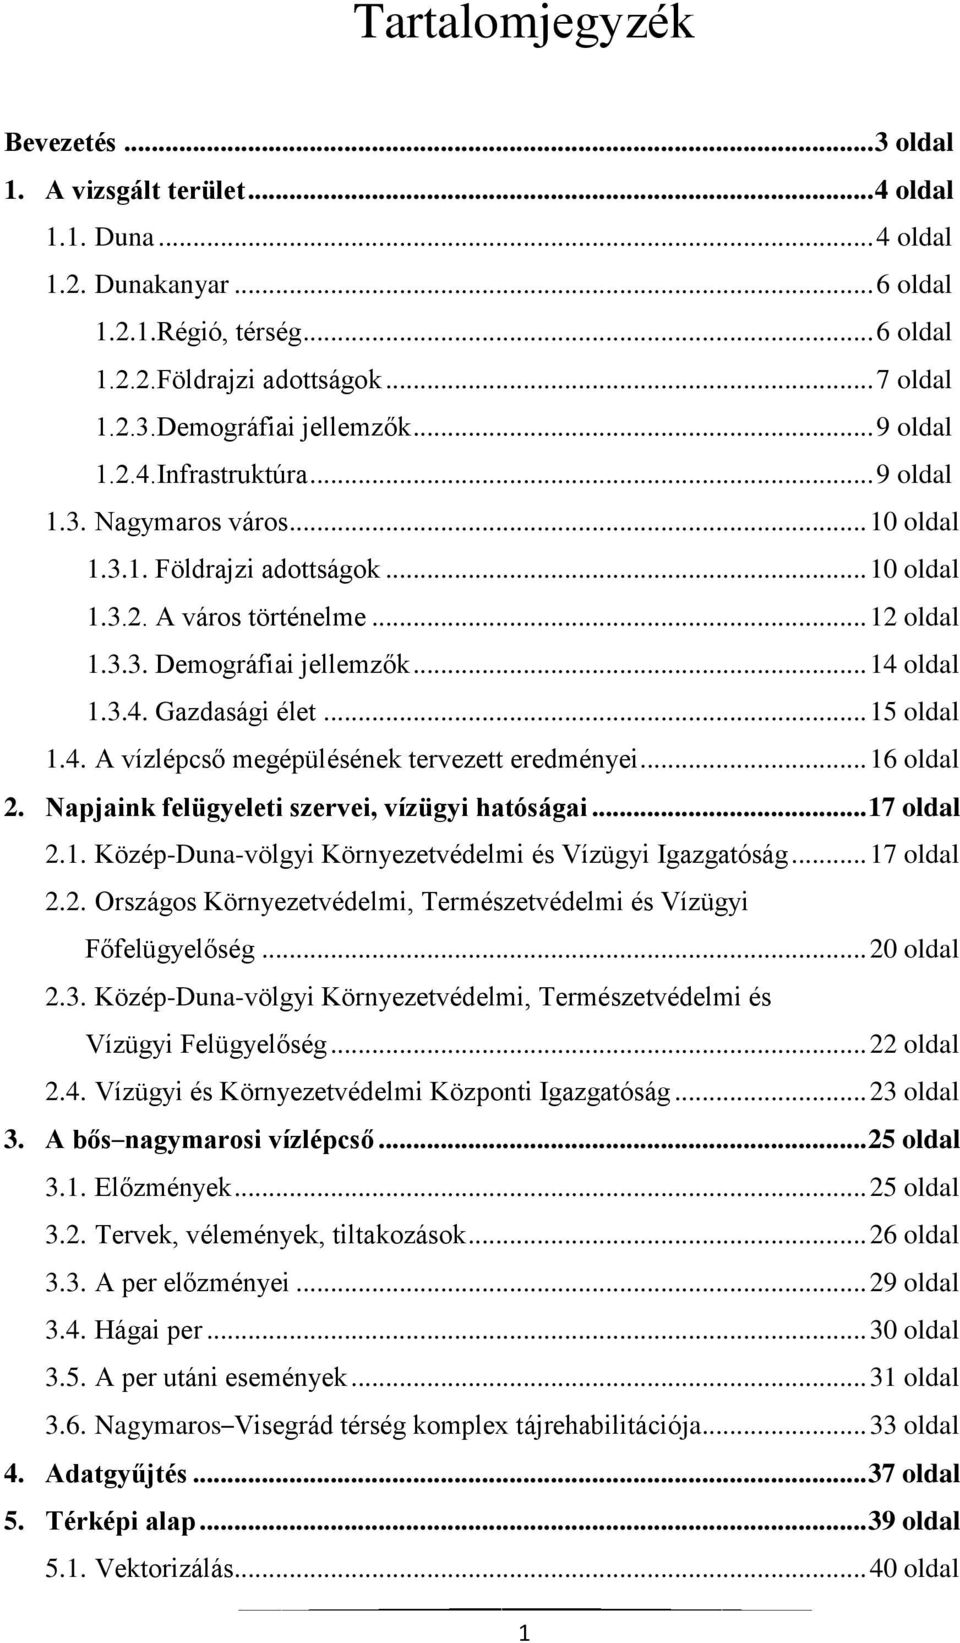 .. 15 oldal 1.4. A vízlépcső megépülésének tervezett eredményei... 16 oldal 2. Napjaink felügyeleti szervei, vízügyi hatóságai... 17 oldal 2.1. Közép-Duna-völgyi Környezetvédelmi és Vízügyi Igazgatóság.